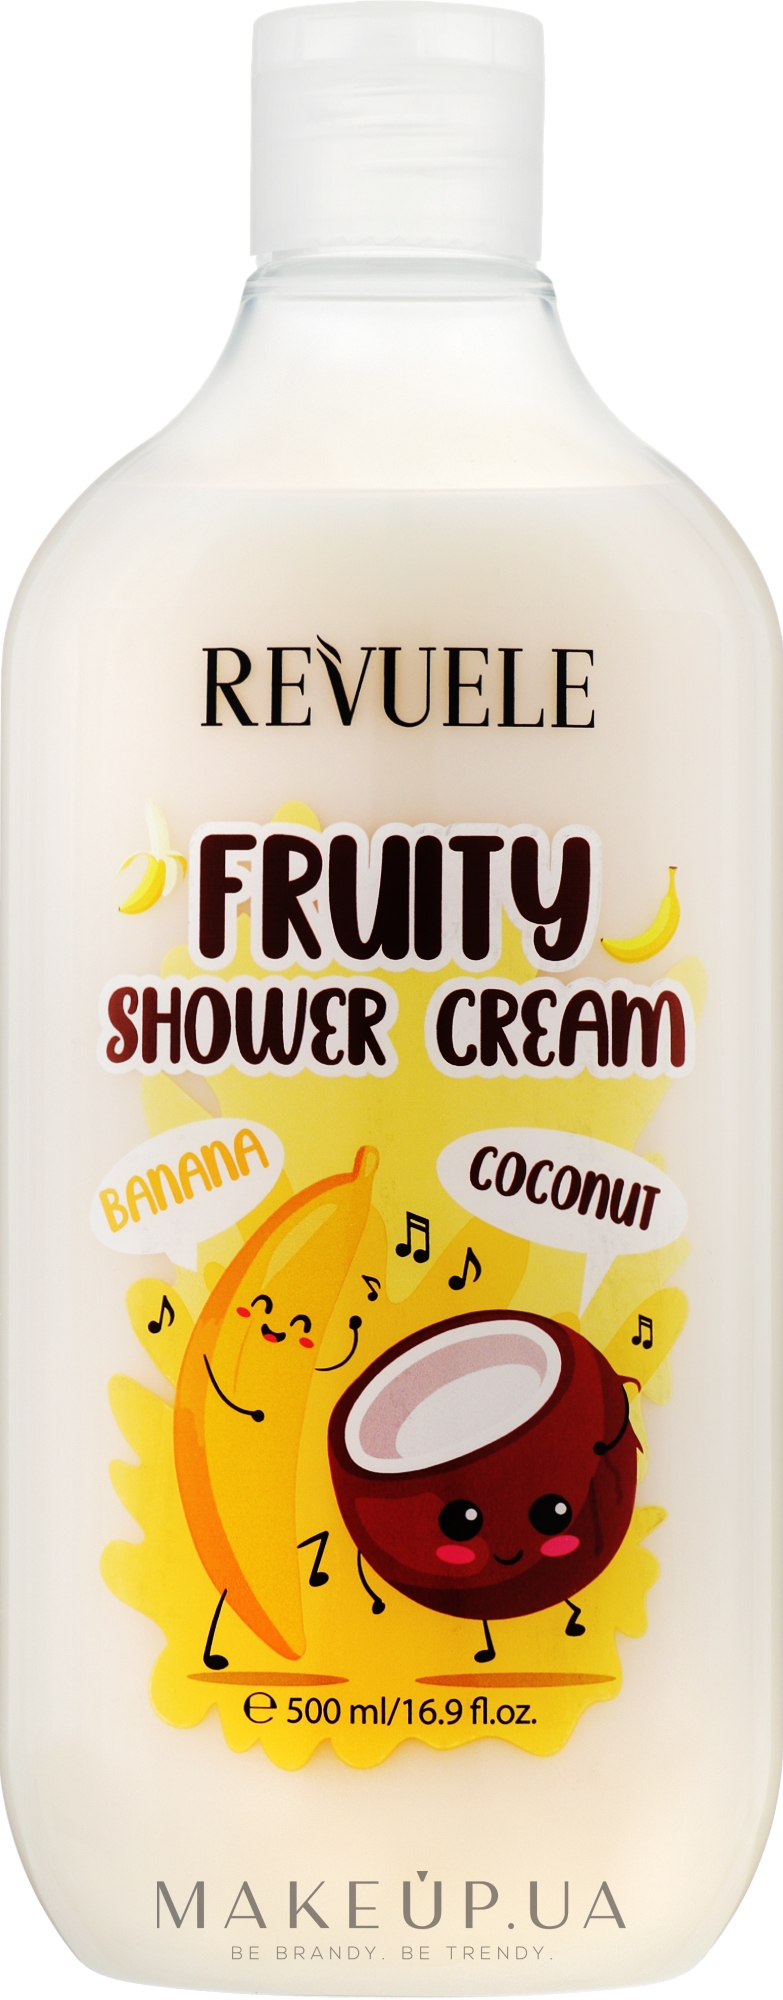 Крем для душа с бананом и кокосом - Revuele Fruity Shower Cream Banana & Coconut — фото 500ml